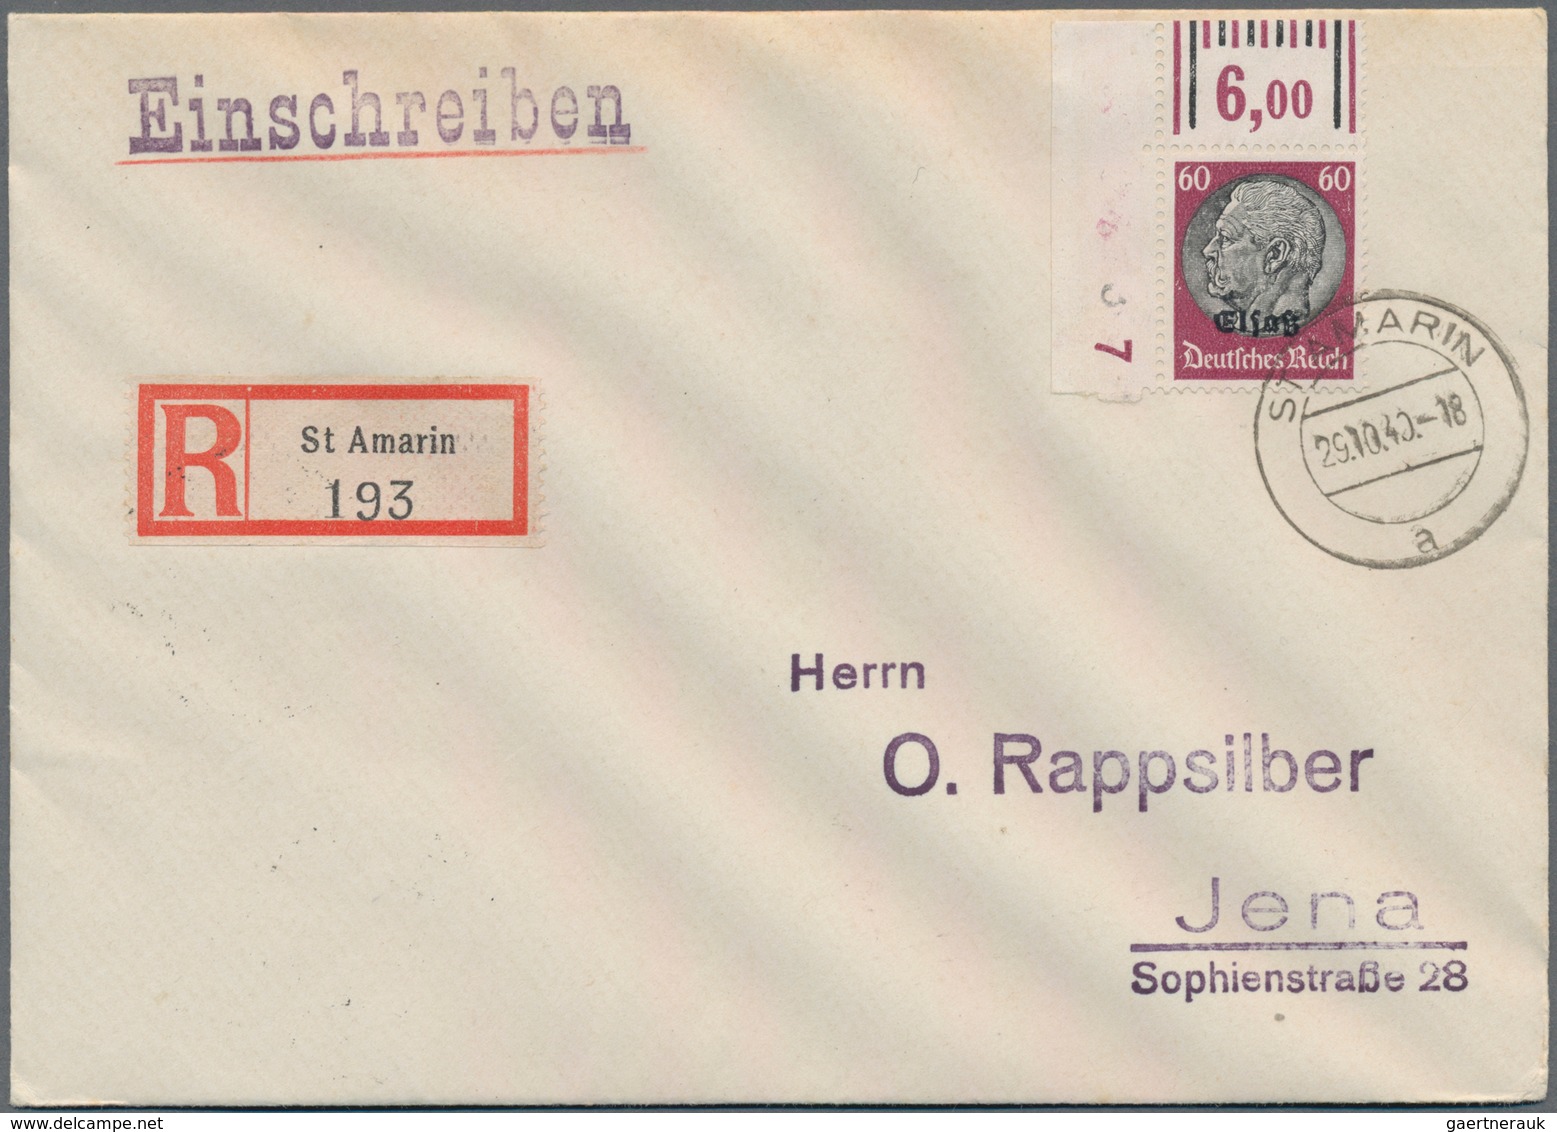 Deutschland: 1890 - 1970 (ca.), Posten Von 150 Belegen, Dabei Dienstpost, Einschreiben, Eilboten, So - Collections